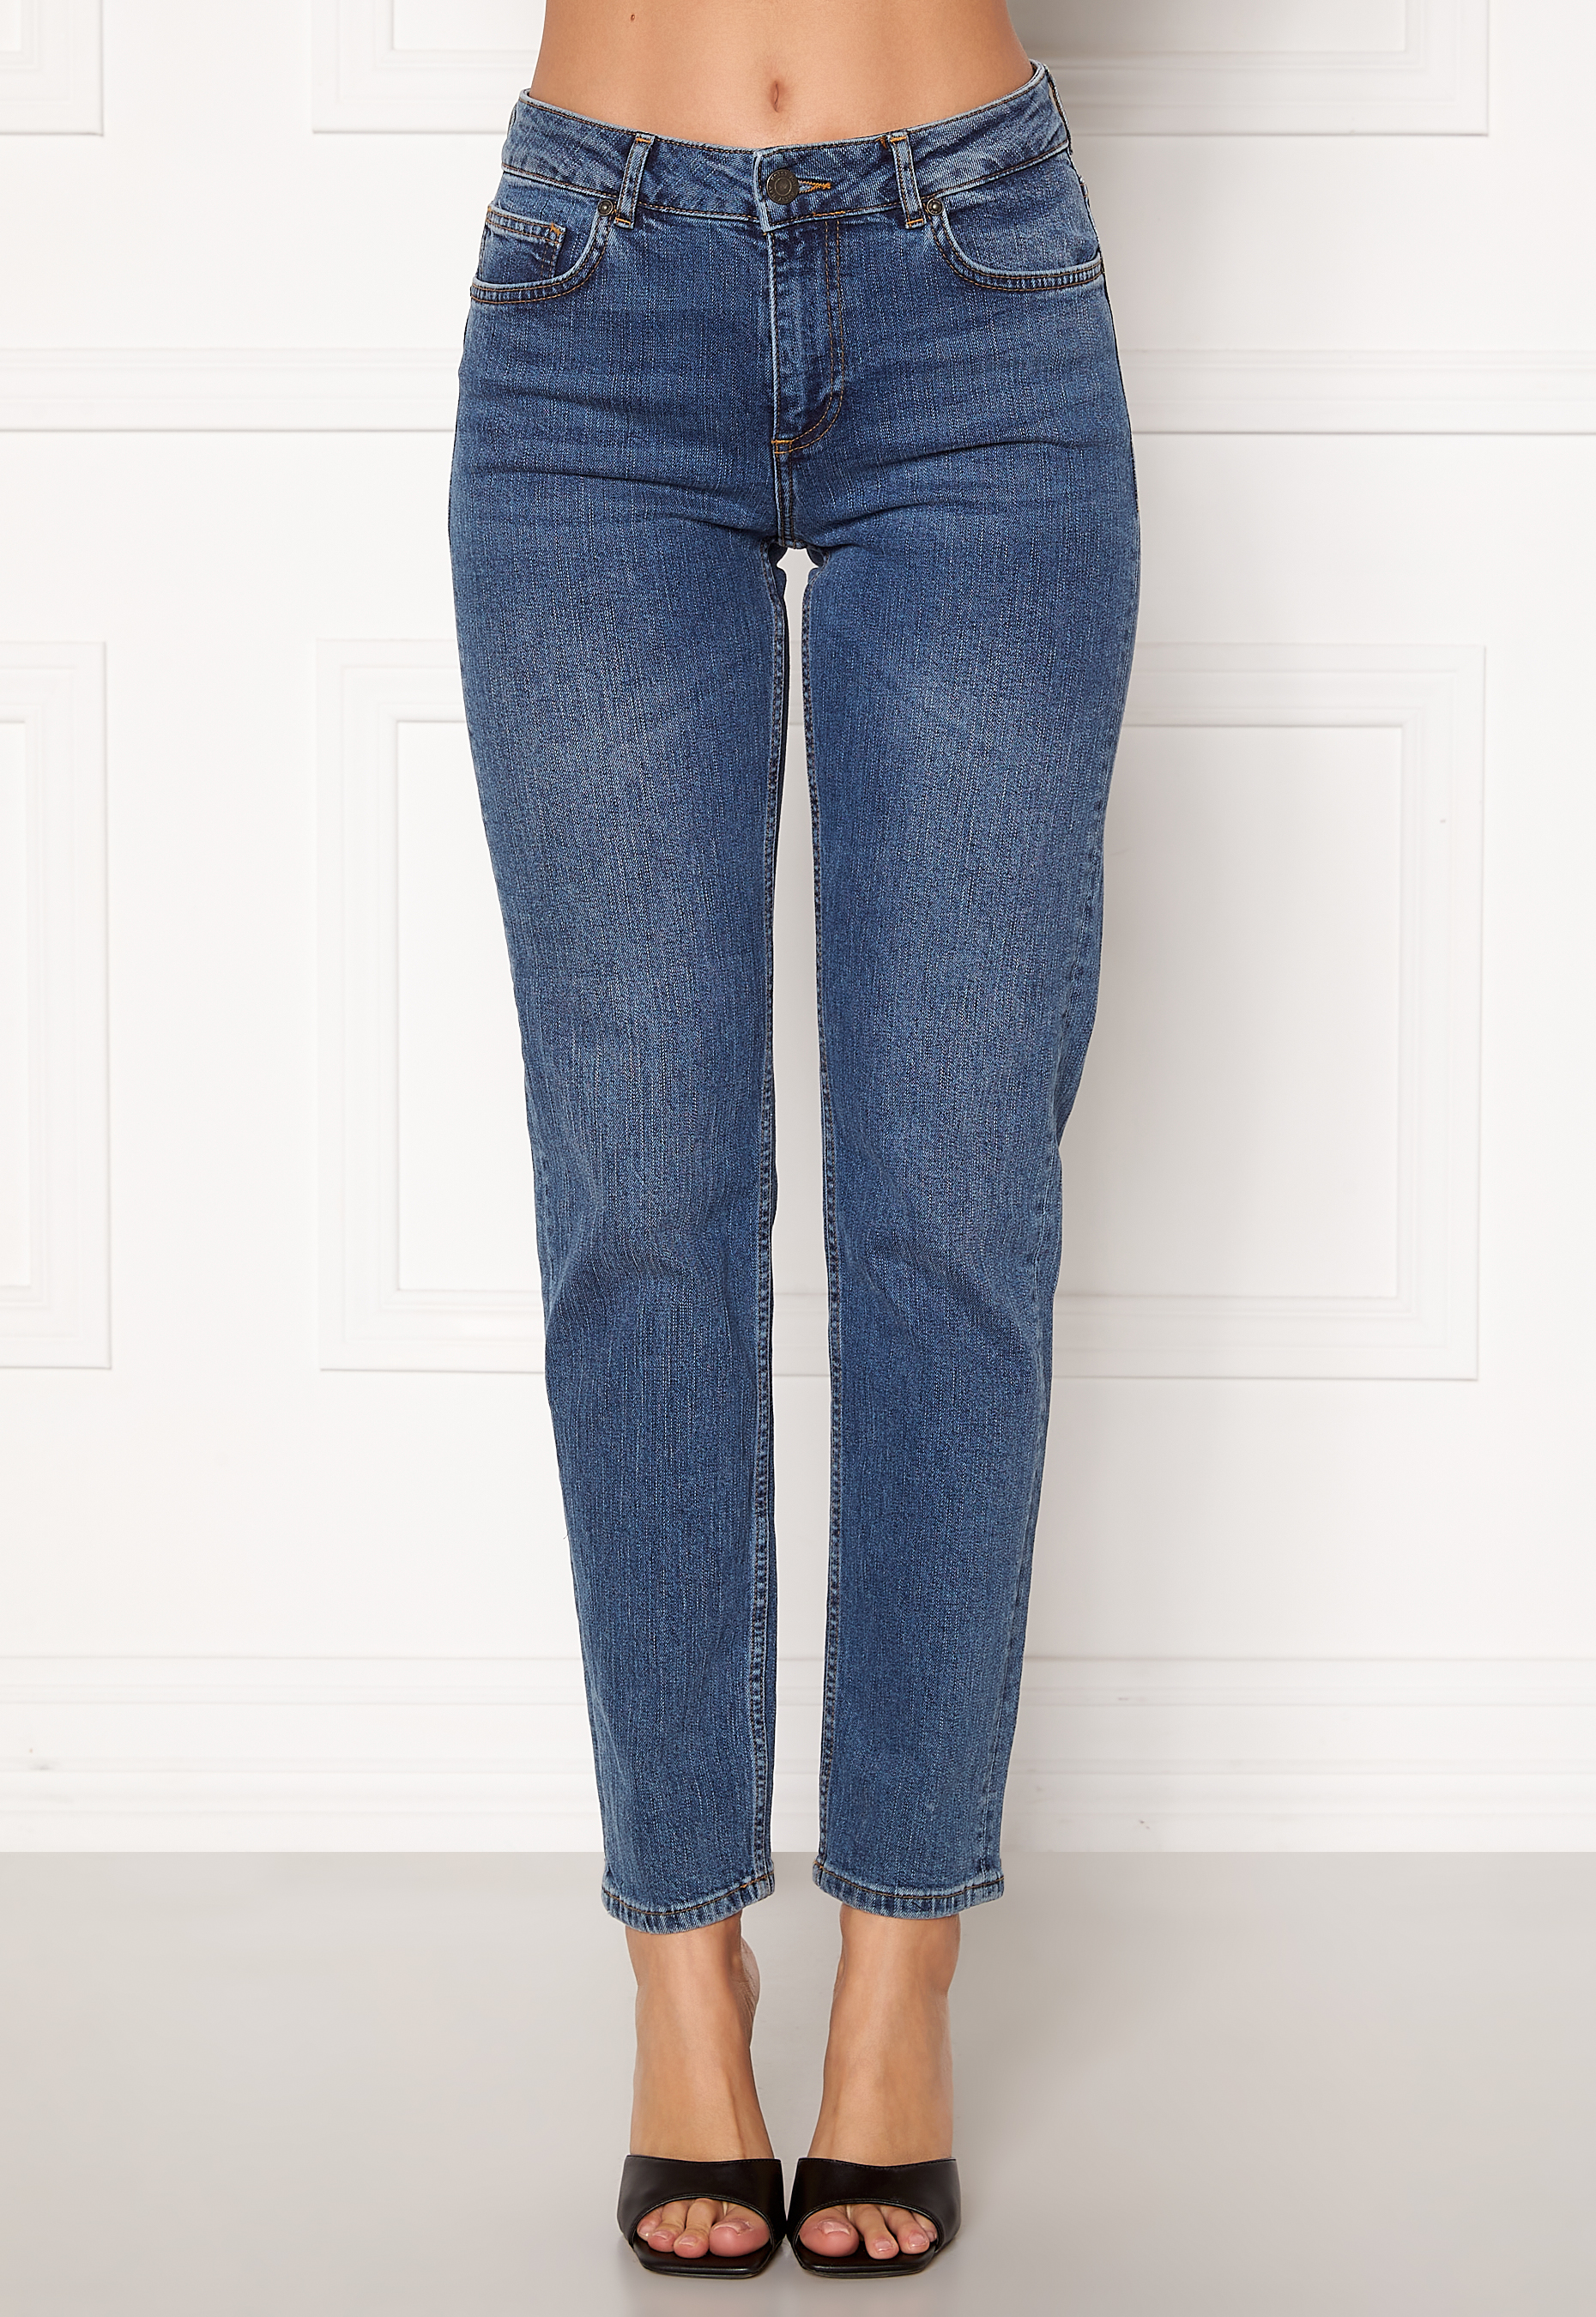 Noisy May Jenna NW Straight Jeans Medium Blue Denim - Bubbleroom